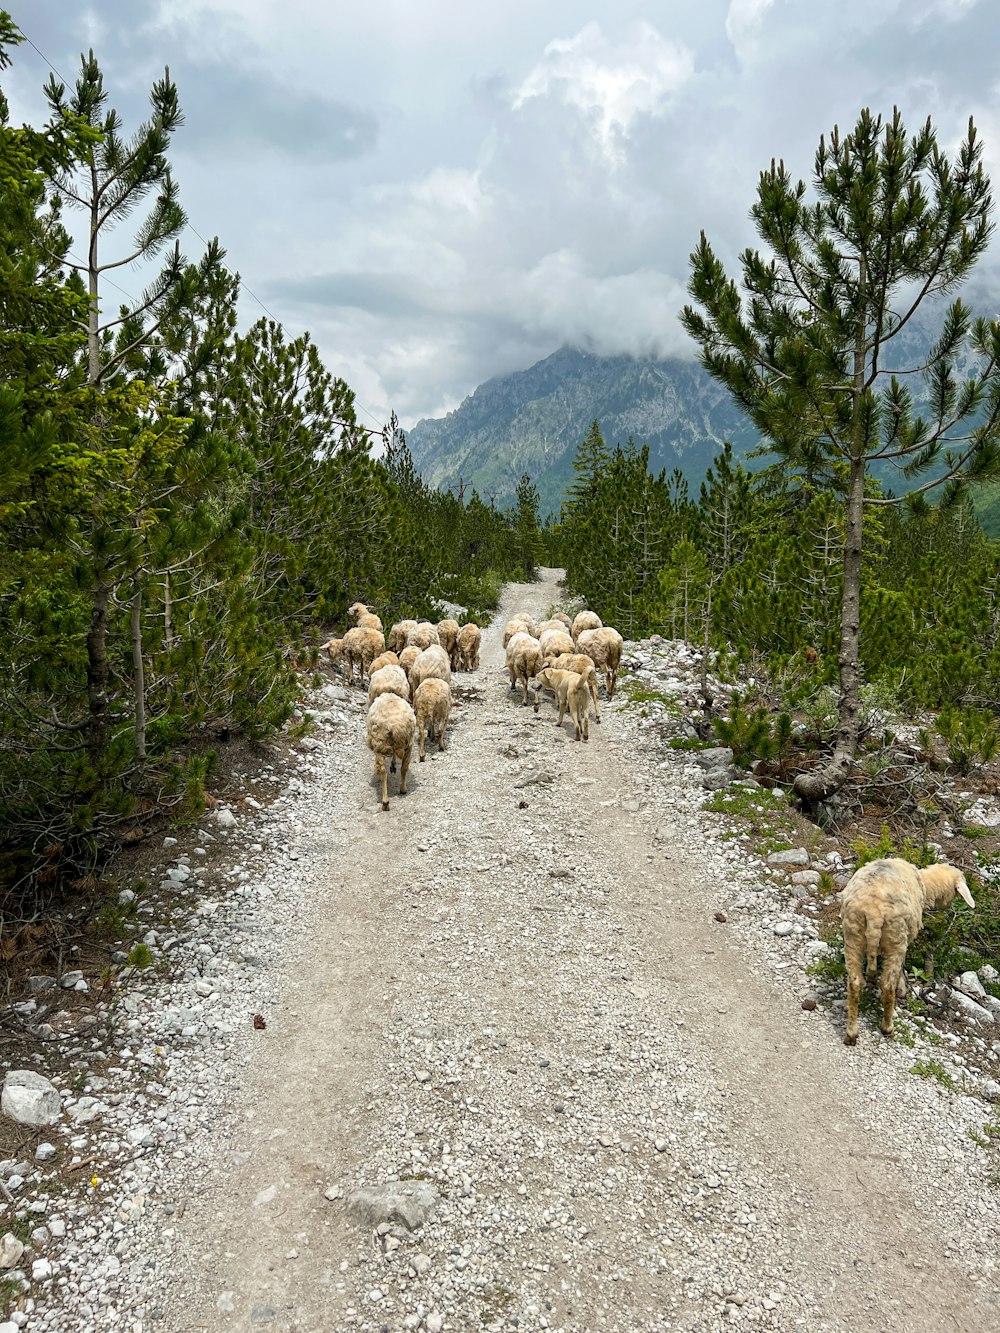 um rebanho de ovelhas caminhando por uma estrada de terra